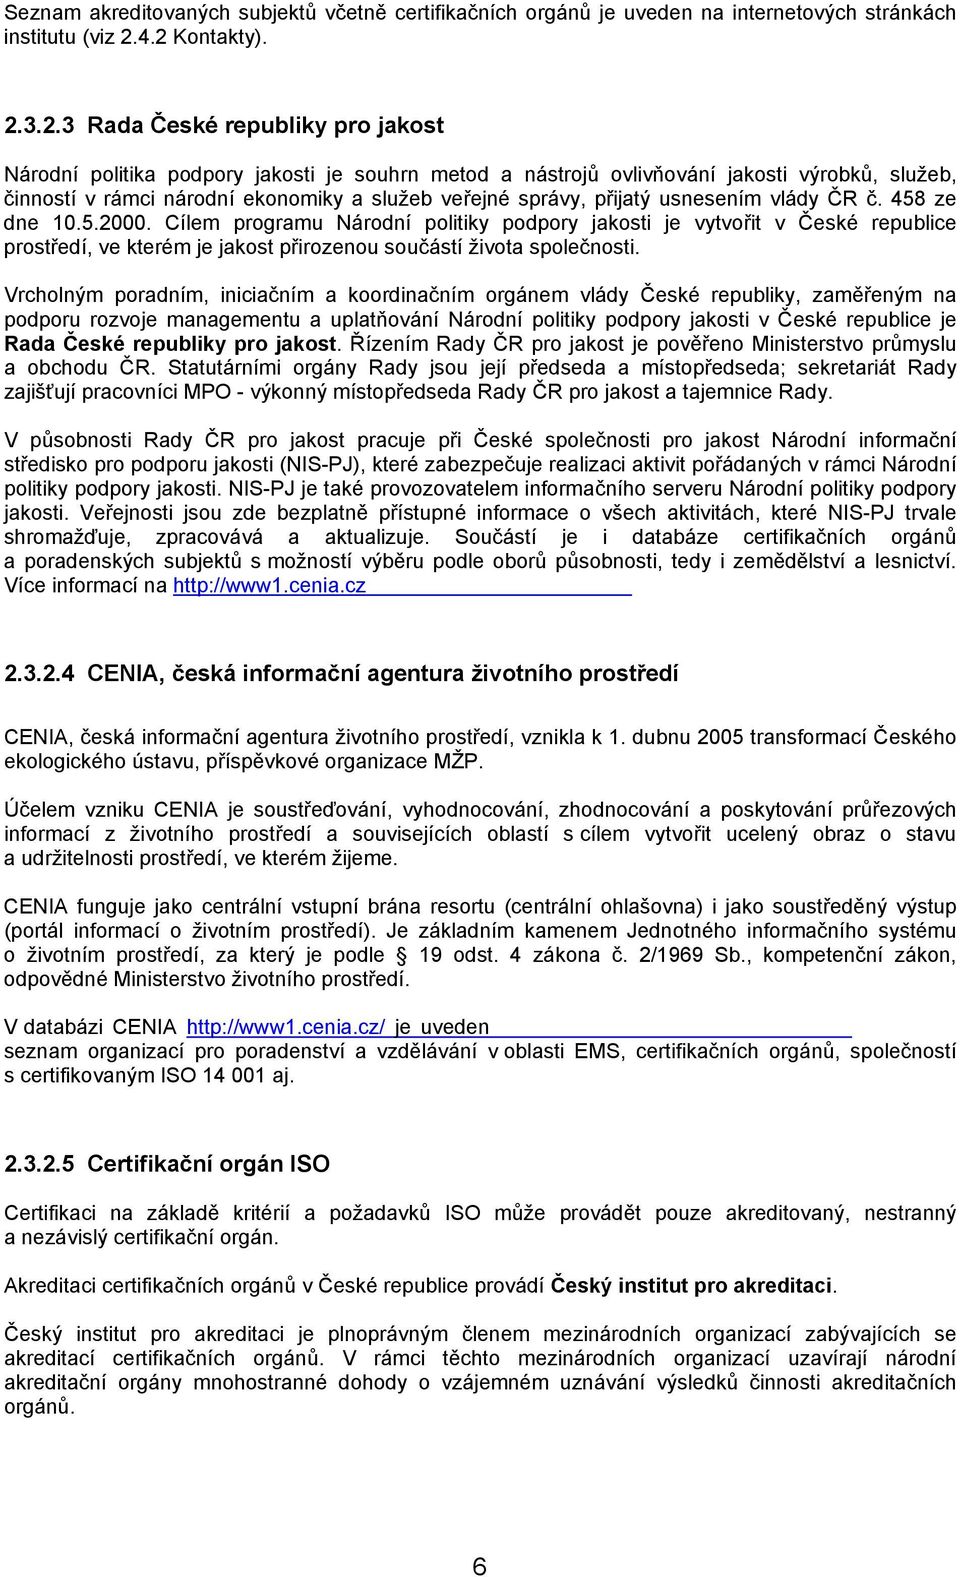 veřejné správy, přijatý usnesením vlády ČR č. 458 ze dne 10.5.2000.